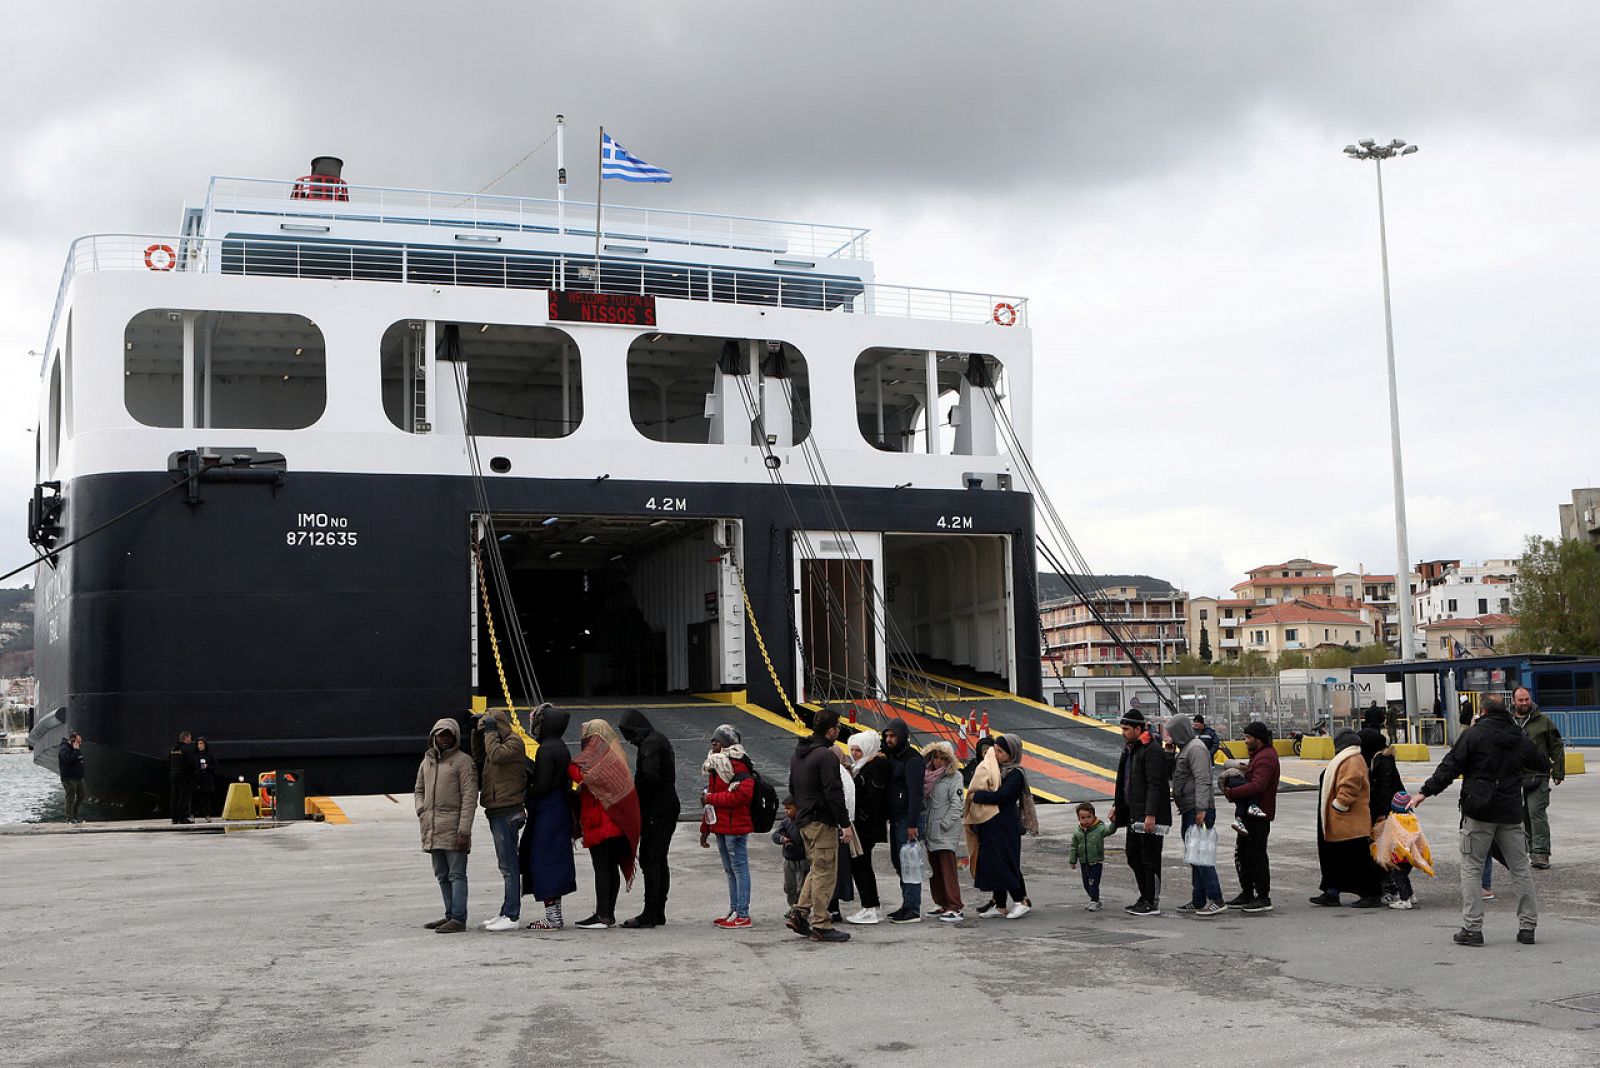 Grecia encierra a los refugiados y migrantes que llegan a Lesbos en un buque de la armada - RTVE.es